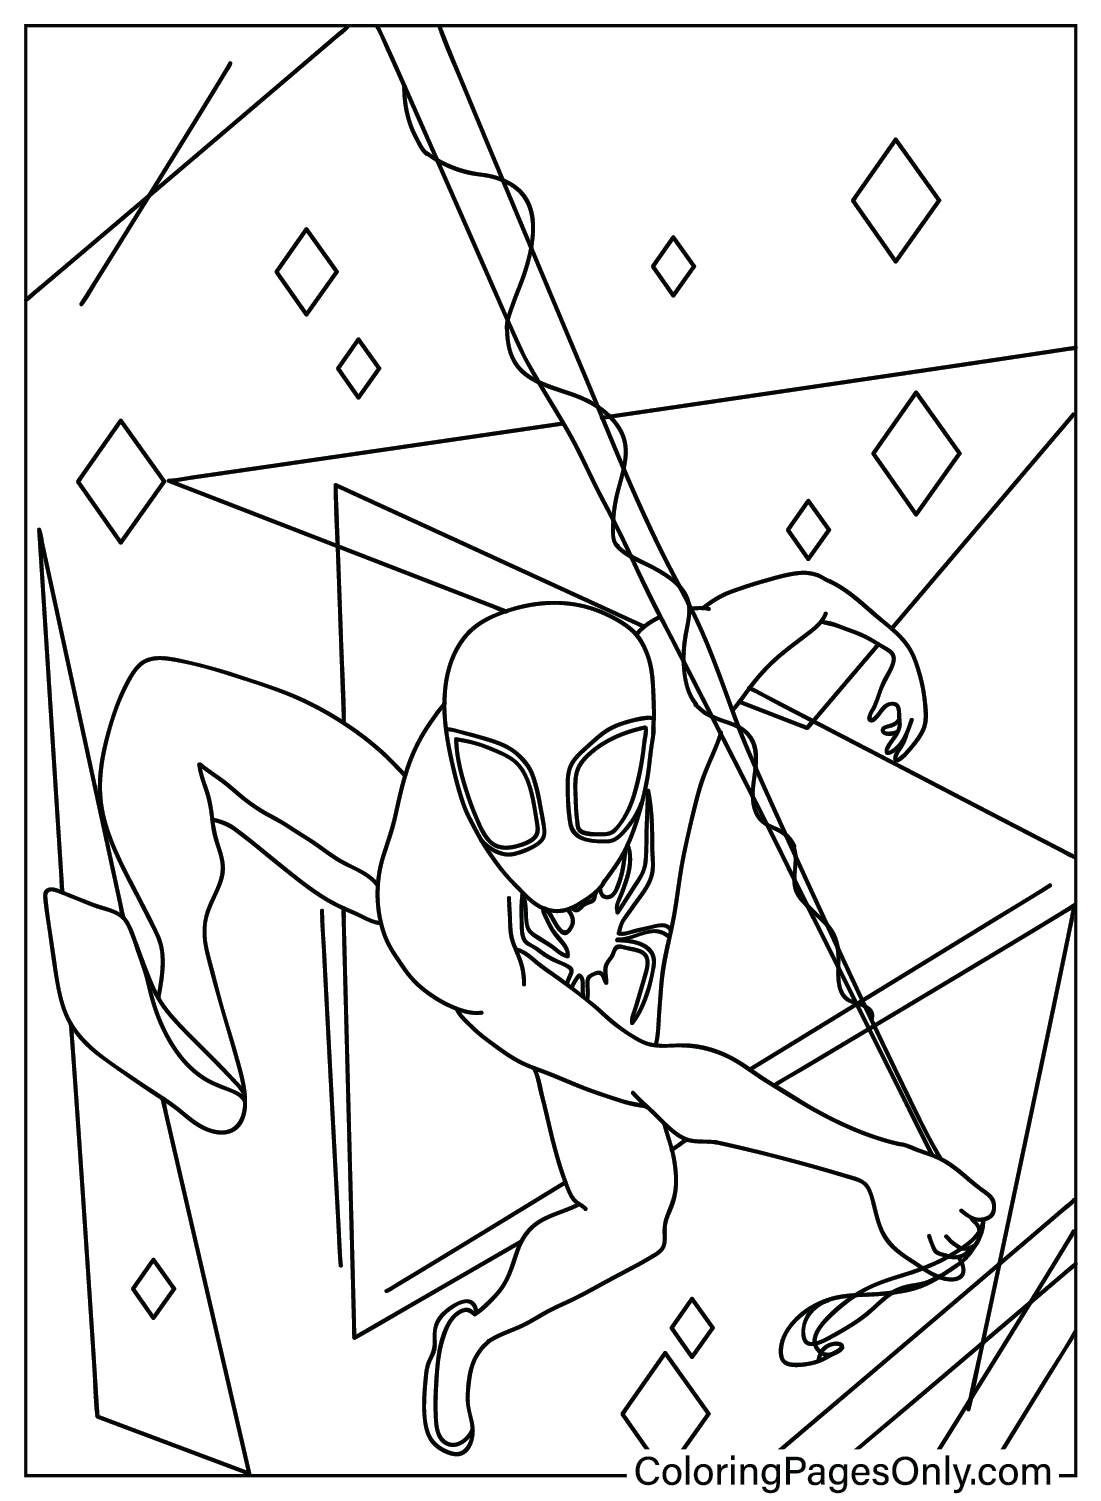 Spider-Man: Attraverso il Ragno Immagini da colorare di Spider-Man: Attraverso il Ragno